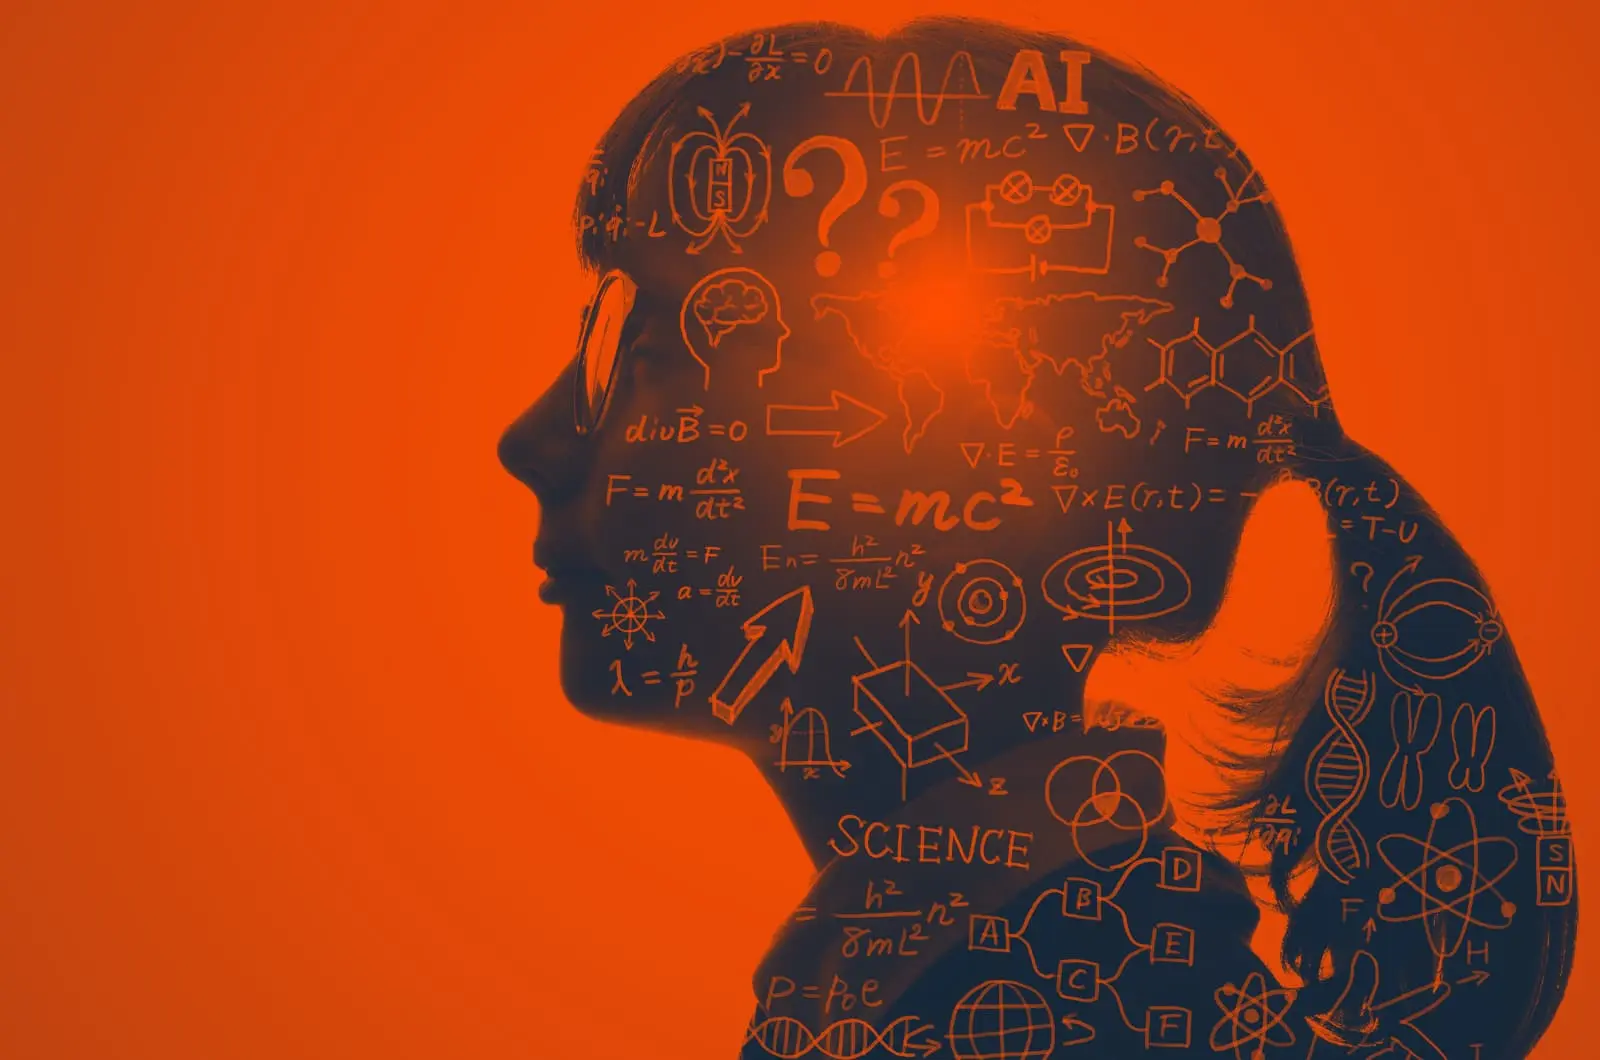 genios cerebro e inteligencia - Qué hace que los genios sean tan inteligentes